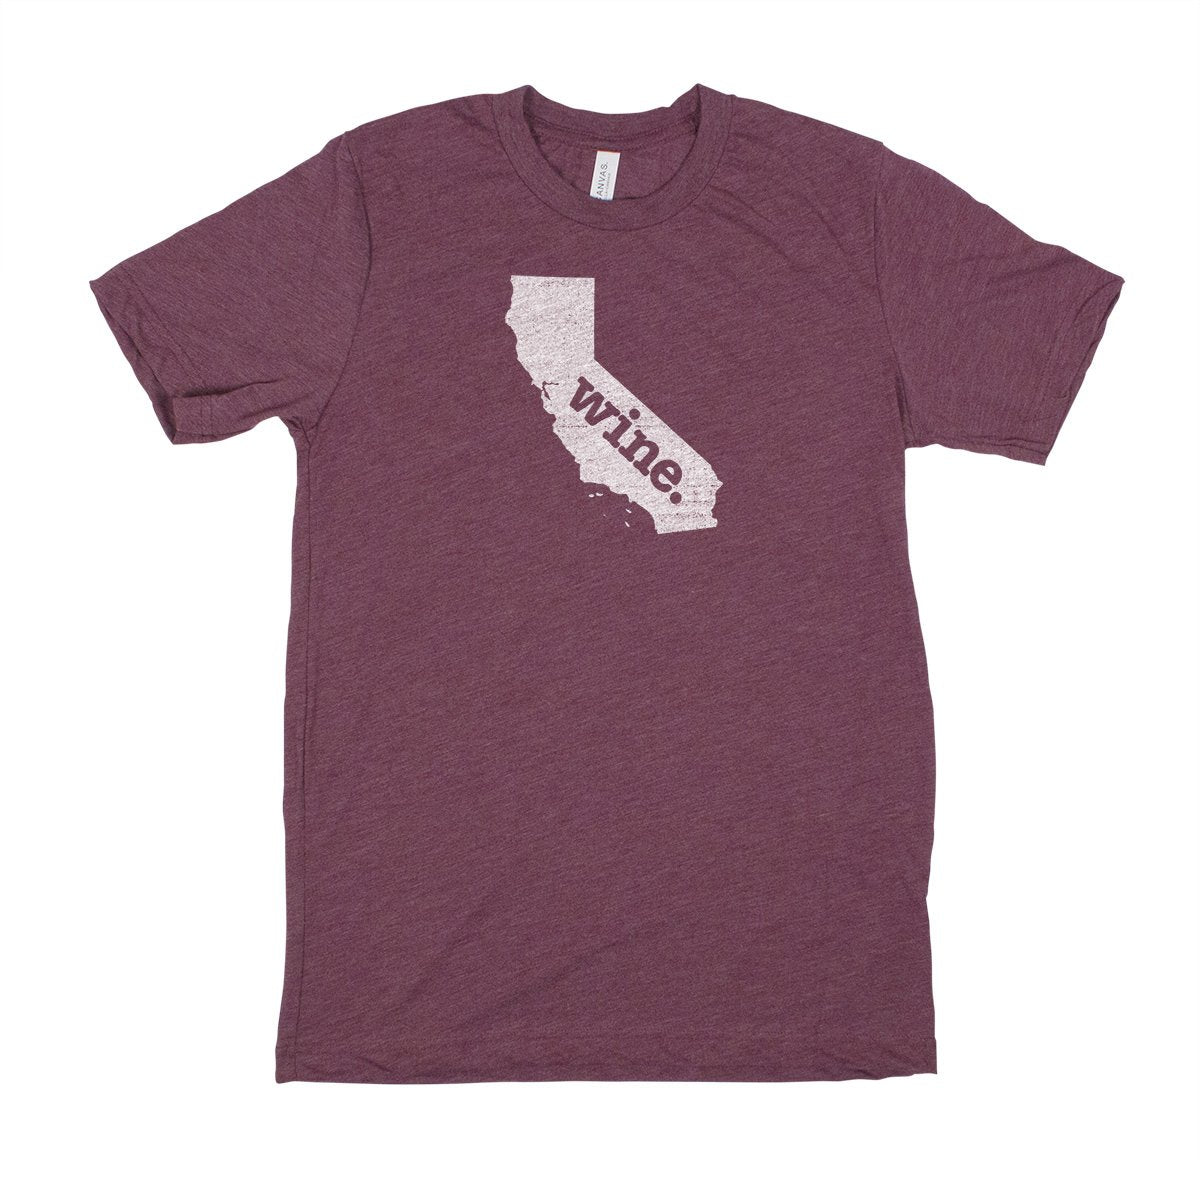 camp. Men's Unisex T-Shirt - Maryland